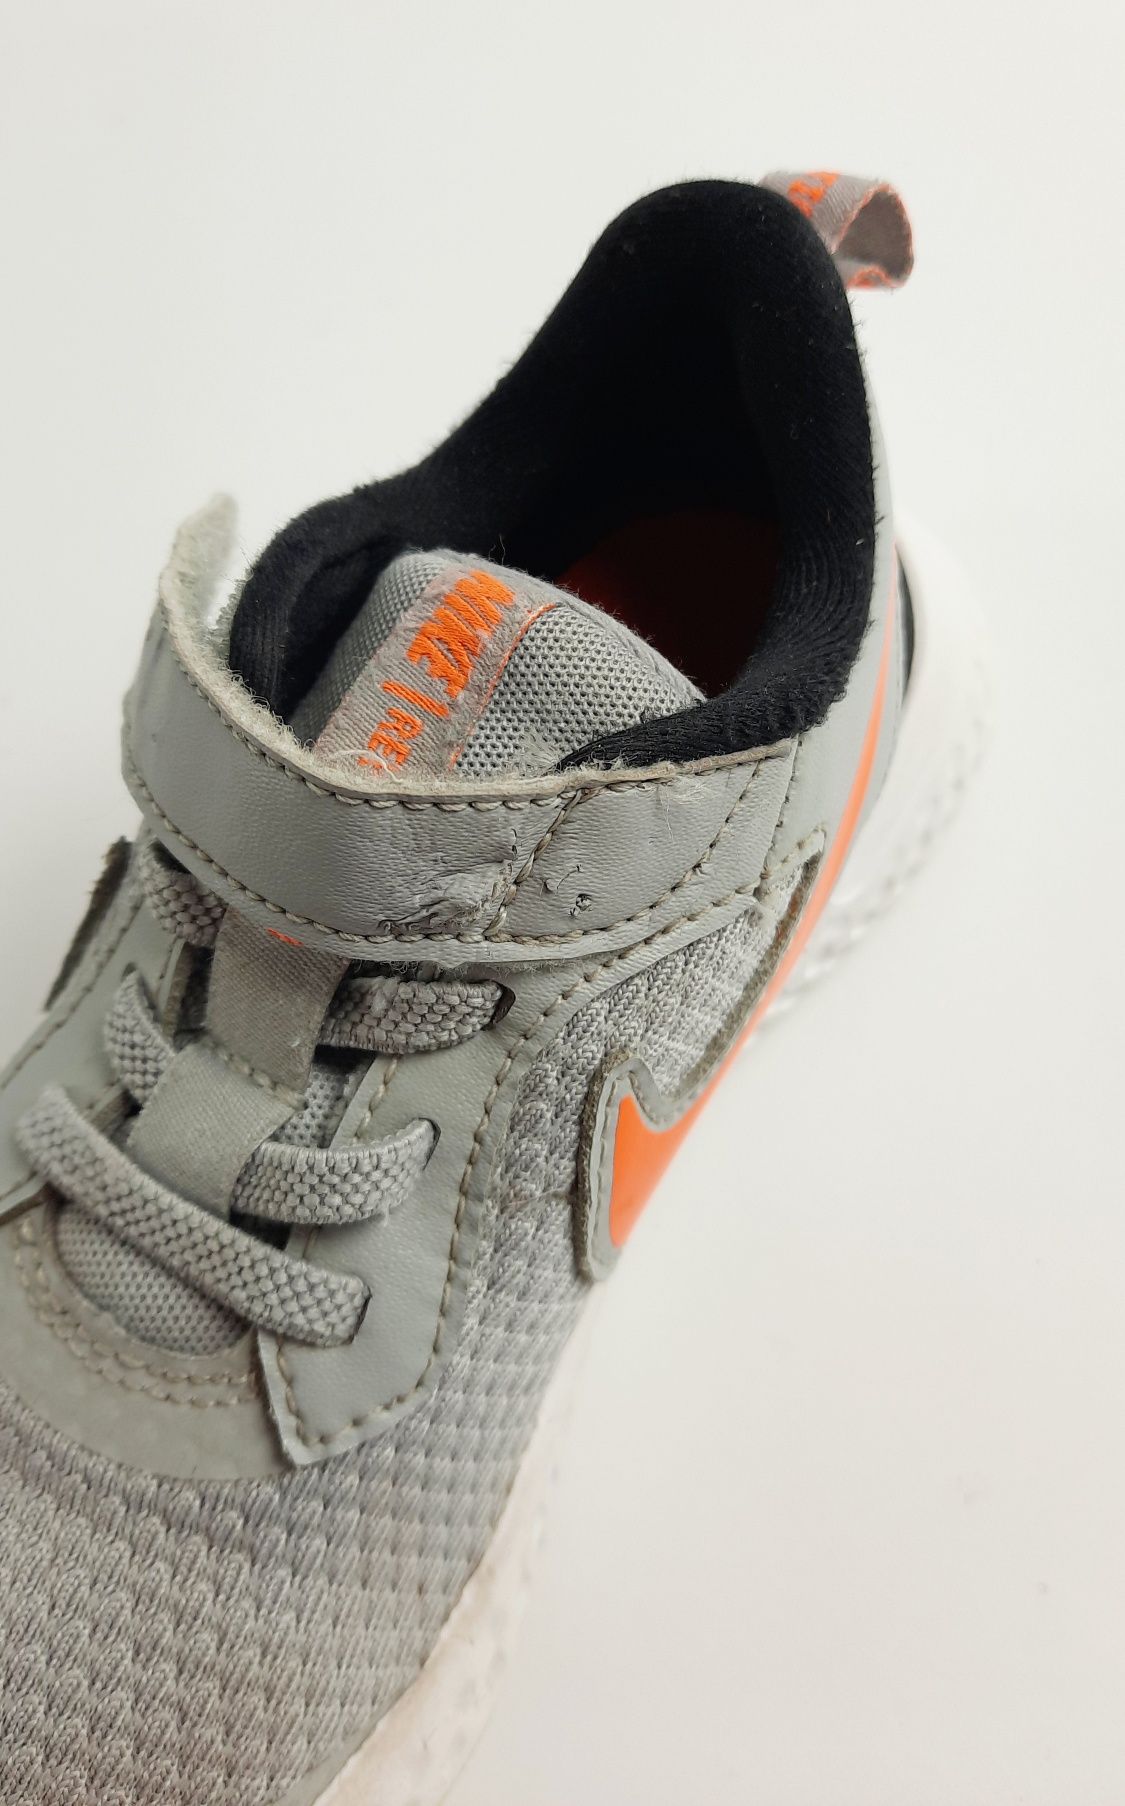 Buty dziecięce Nike Revolution 5 rozmiar 27.5